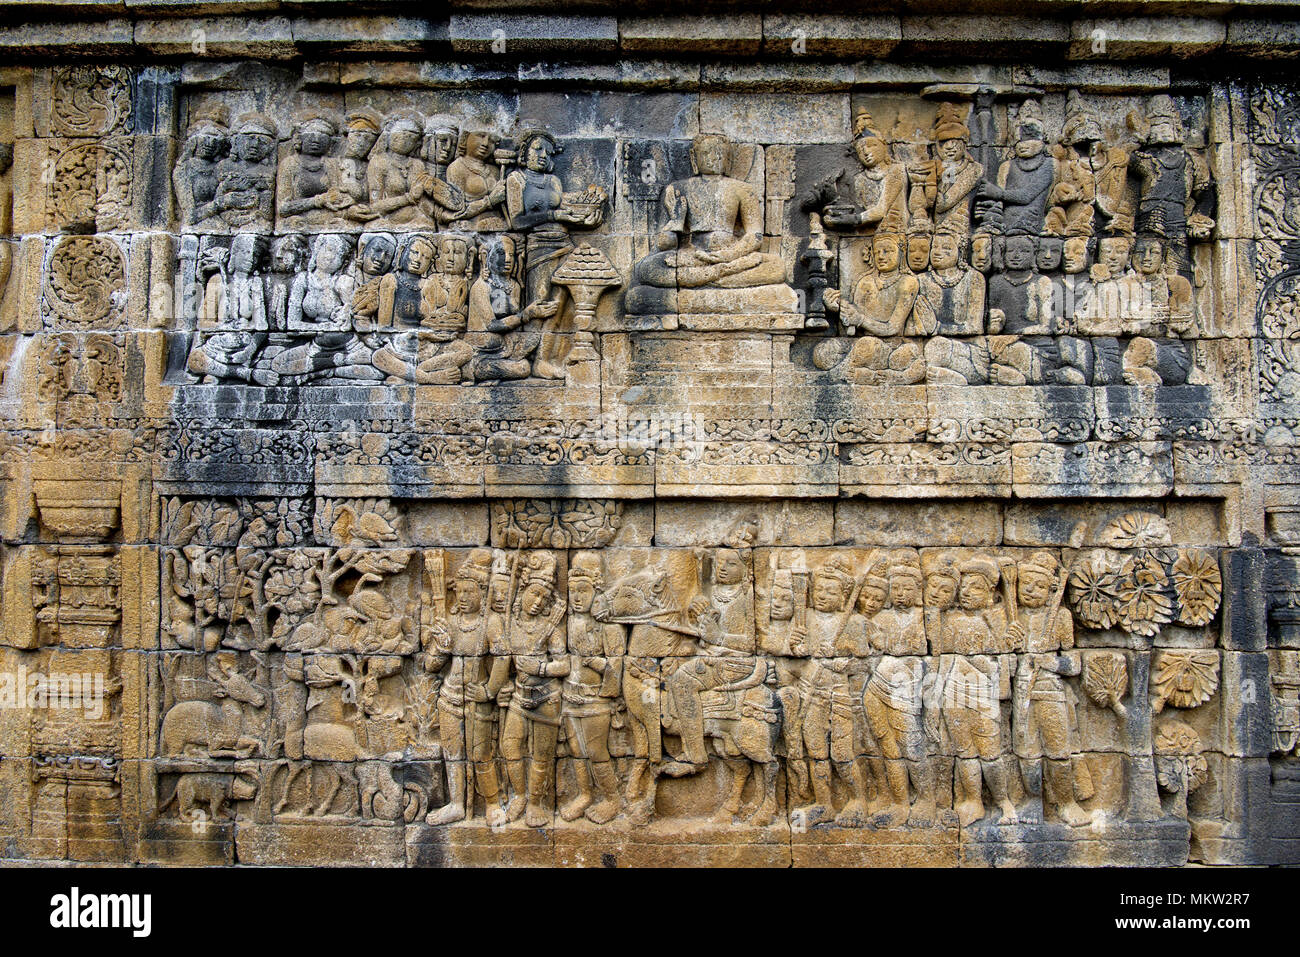 Deux magnifiques story bord de ton bas-relief carving Borobudur Temple bouddhiste du 9ème siècle Java Indonésie Banque D'Images